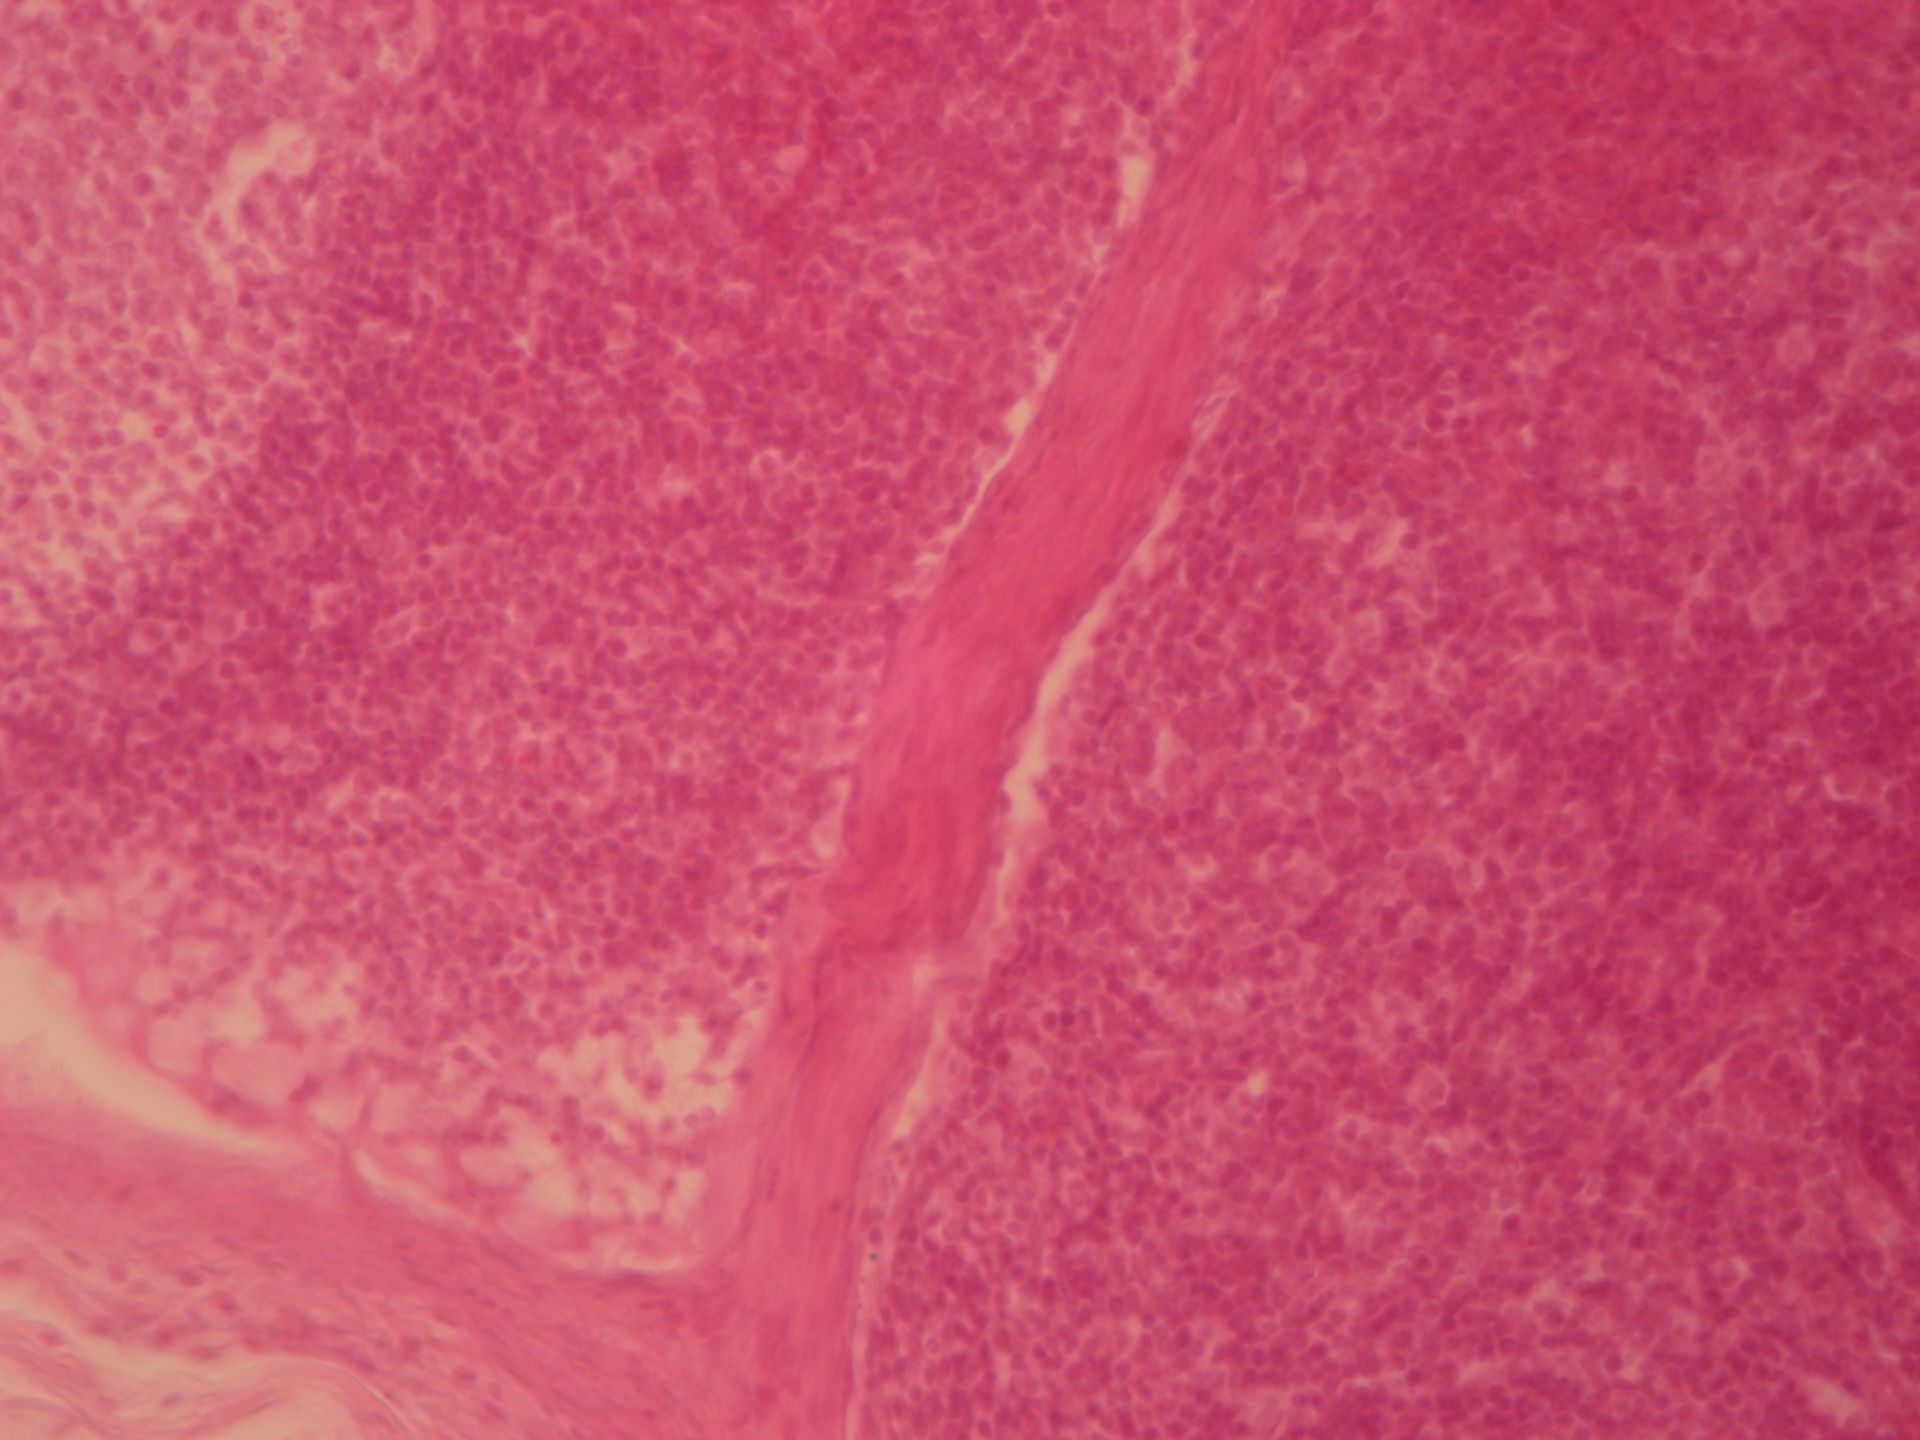 Lymphknoten des Rindes 3 - Trabekel und Intermediärsinus